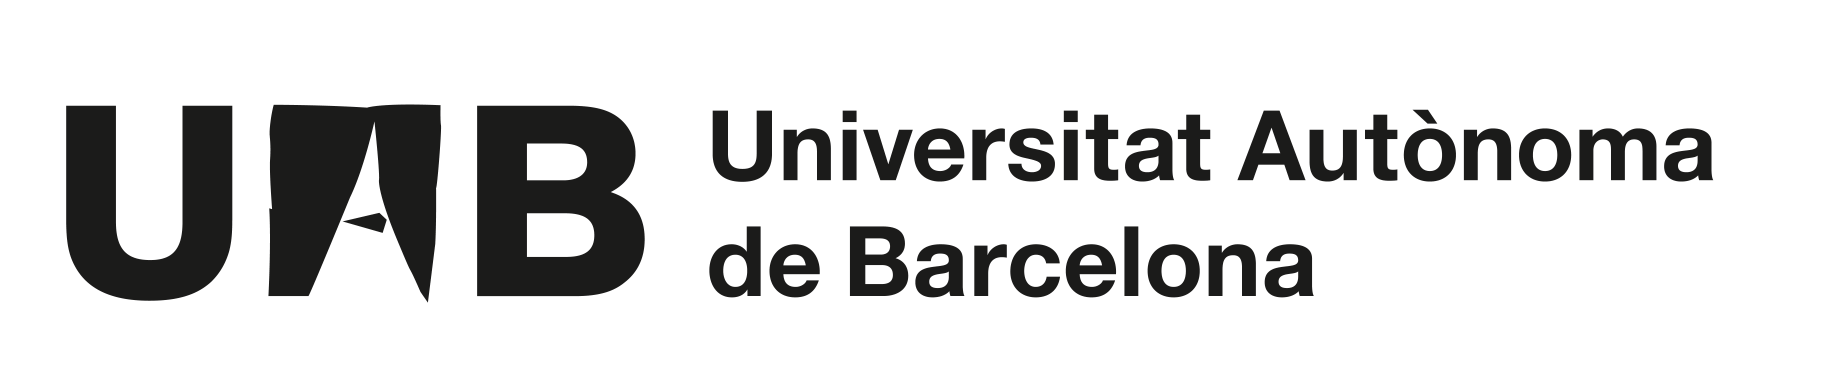 UAB Logo